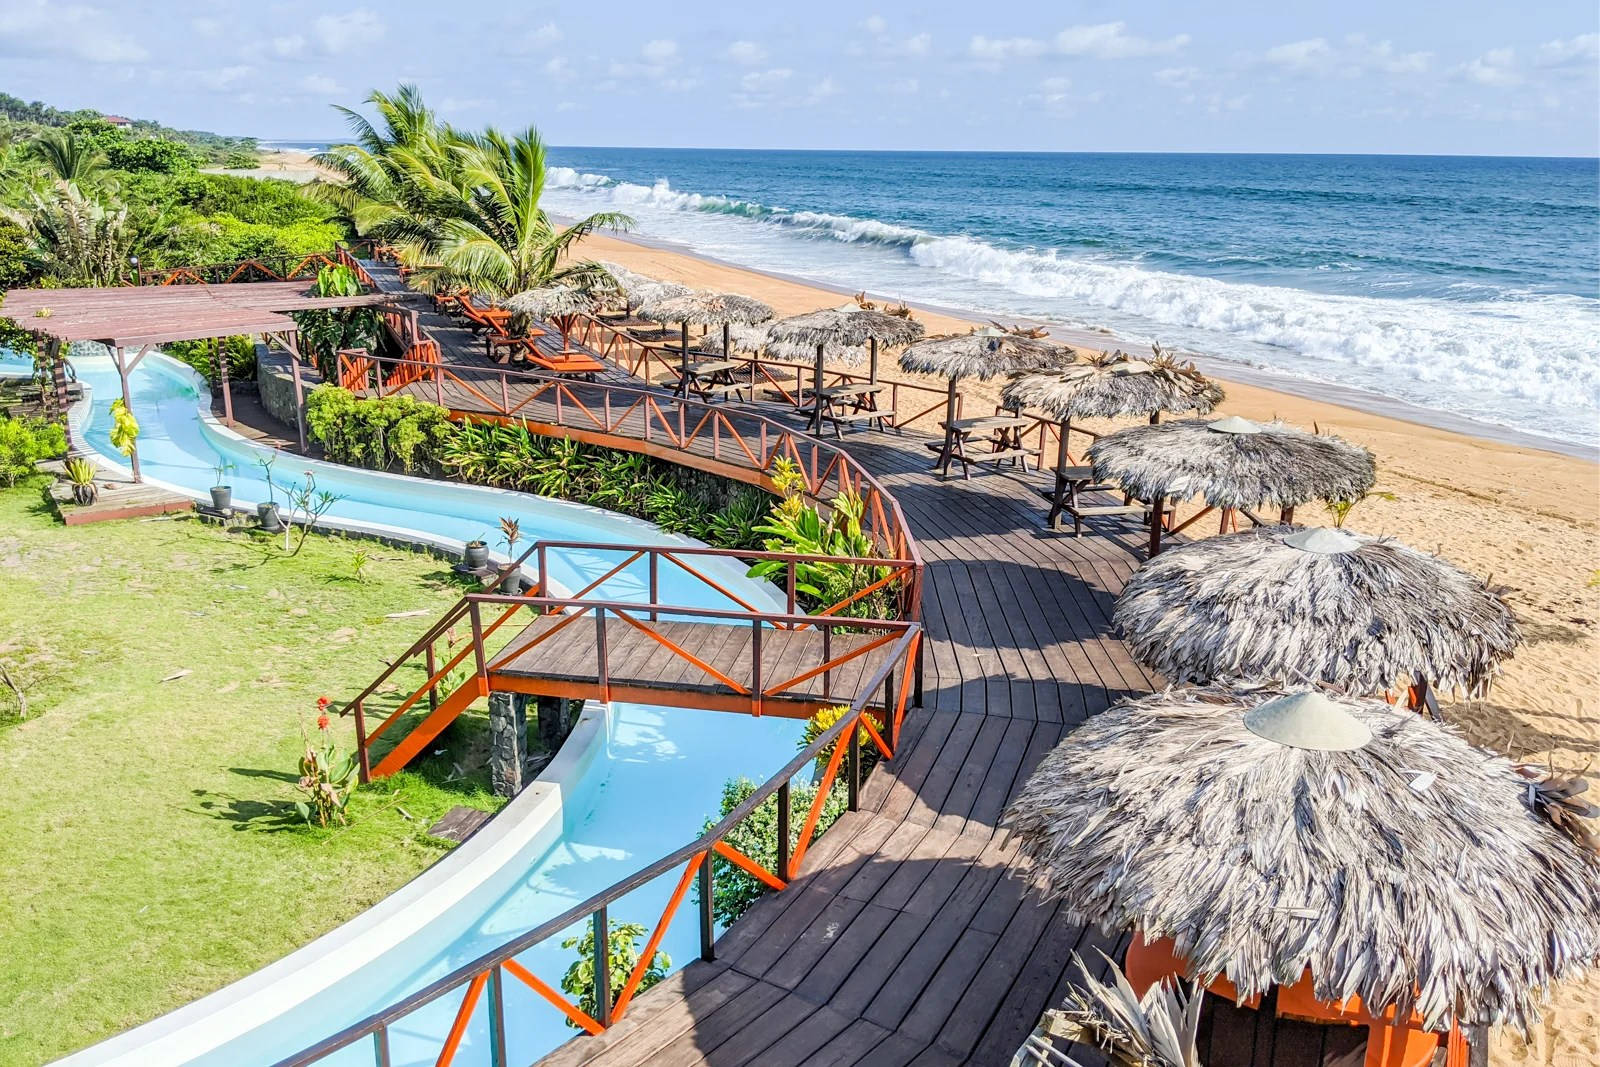 Liberia Beach Resort